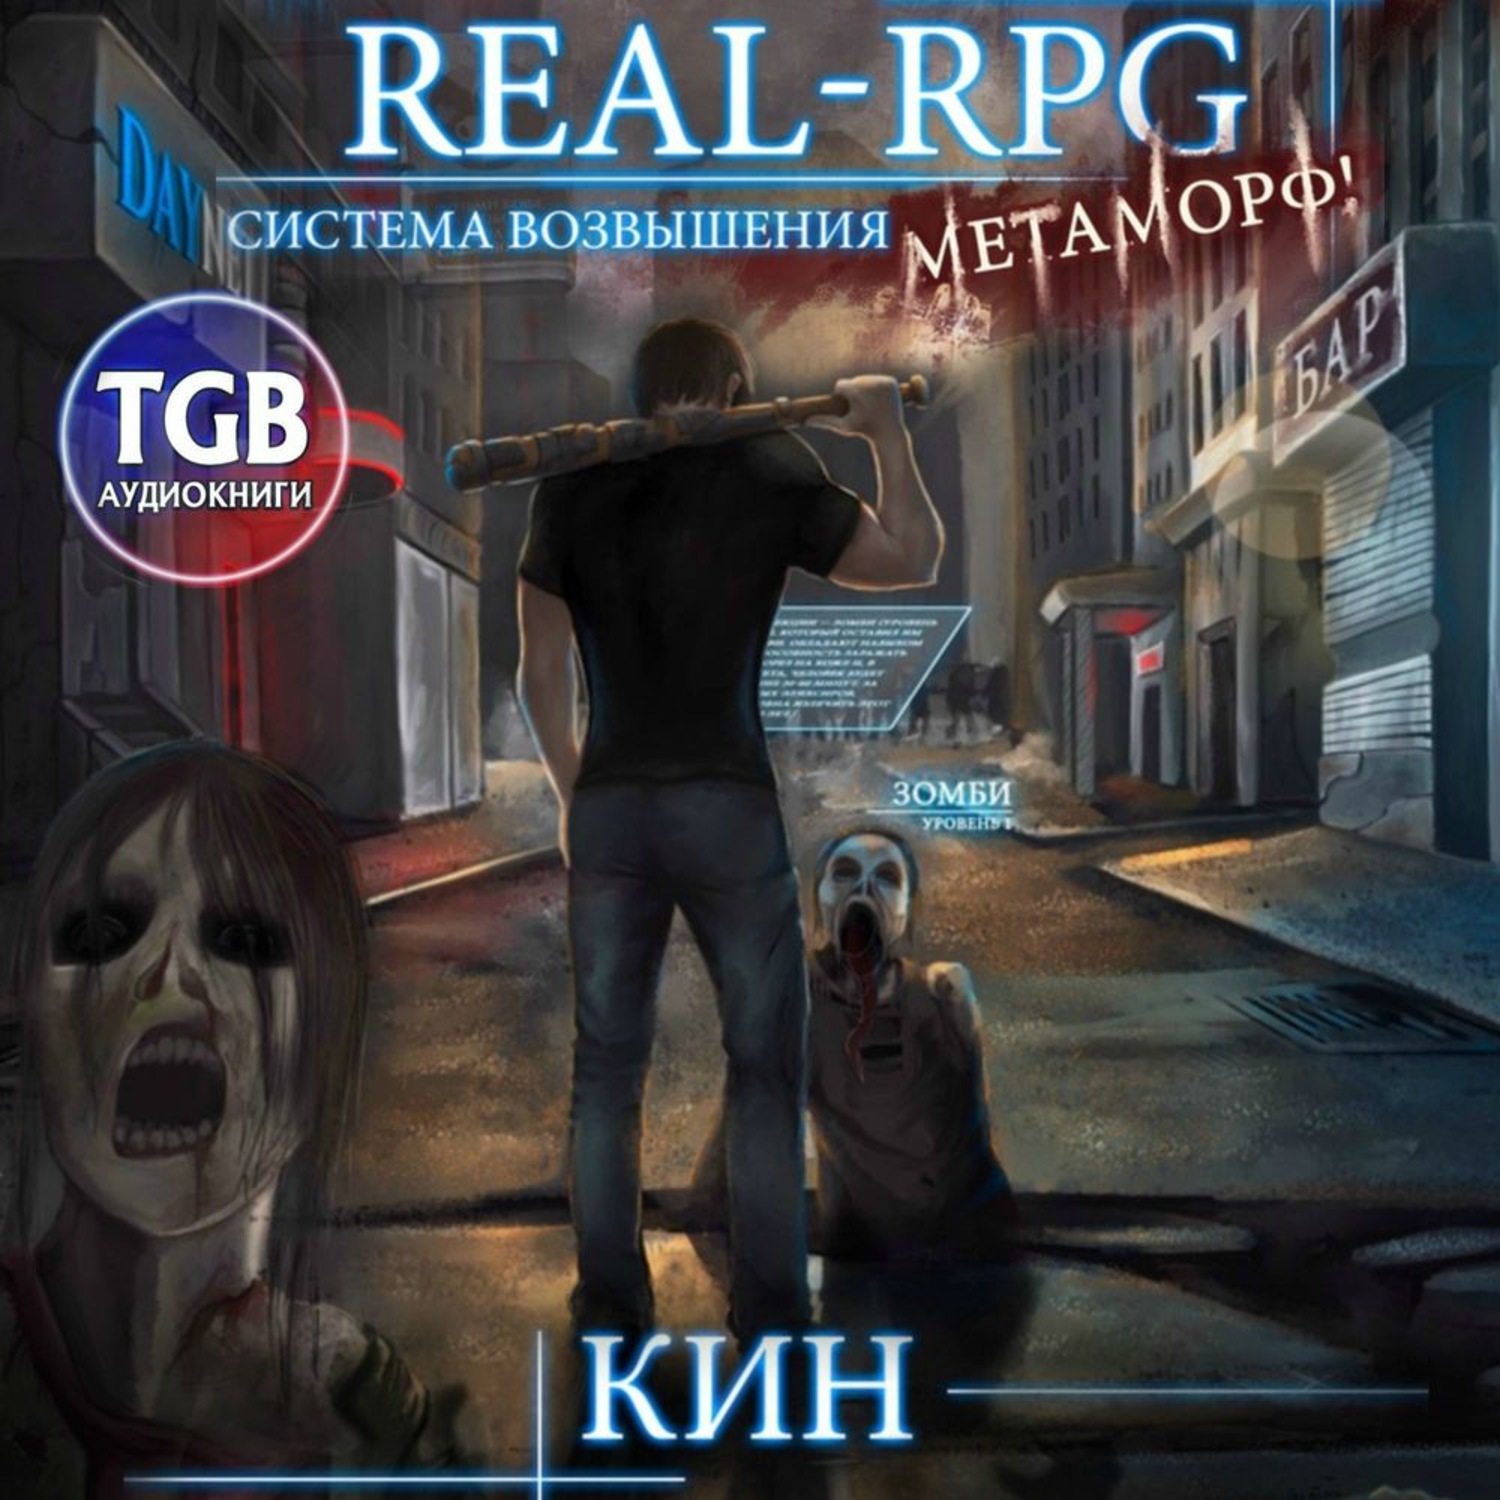 Real rpg 11